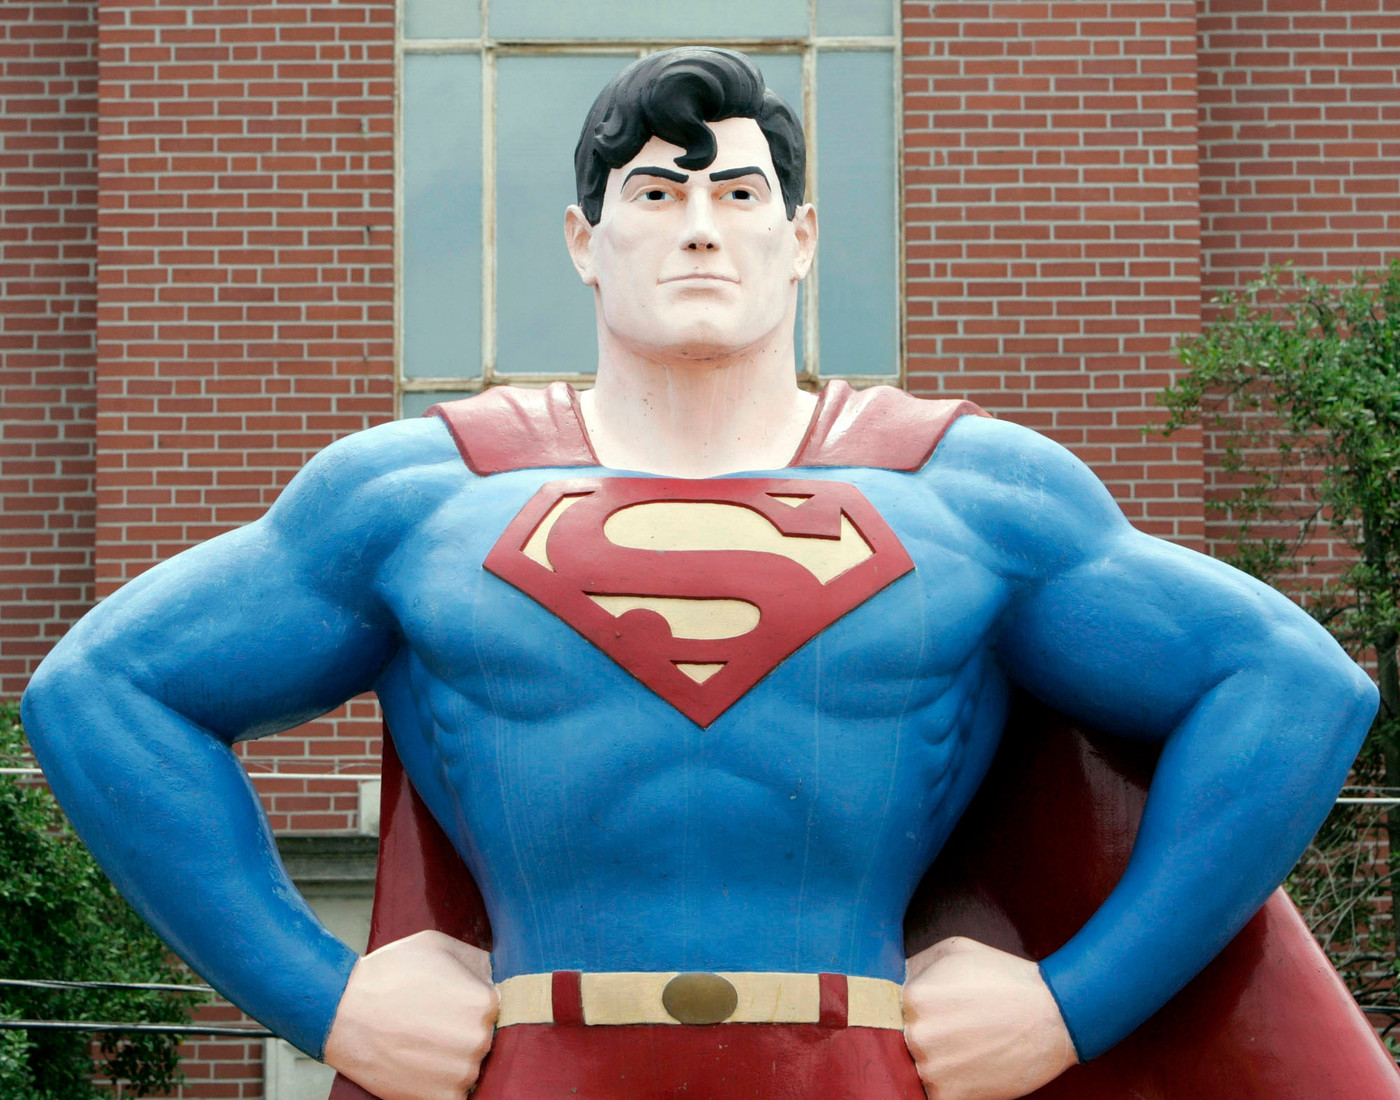 Von fiktiv zu real: Metropolis in Illinois hat sich Superman zu eigen gemacht, um Touristen anzulocken. Auf dem Bild ist die vier Meter hohe Statue zu sehen.